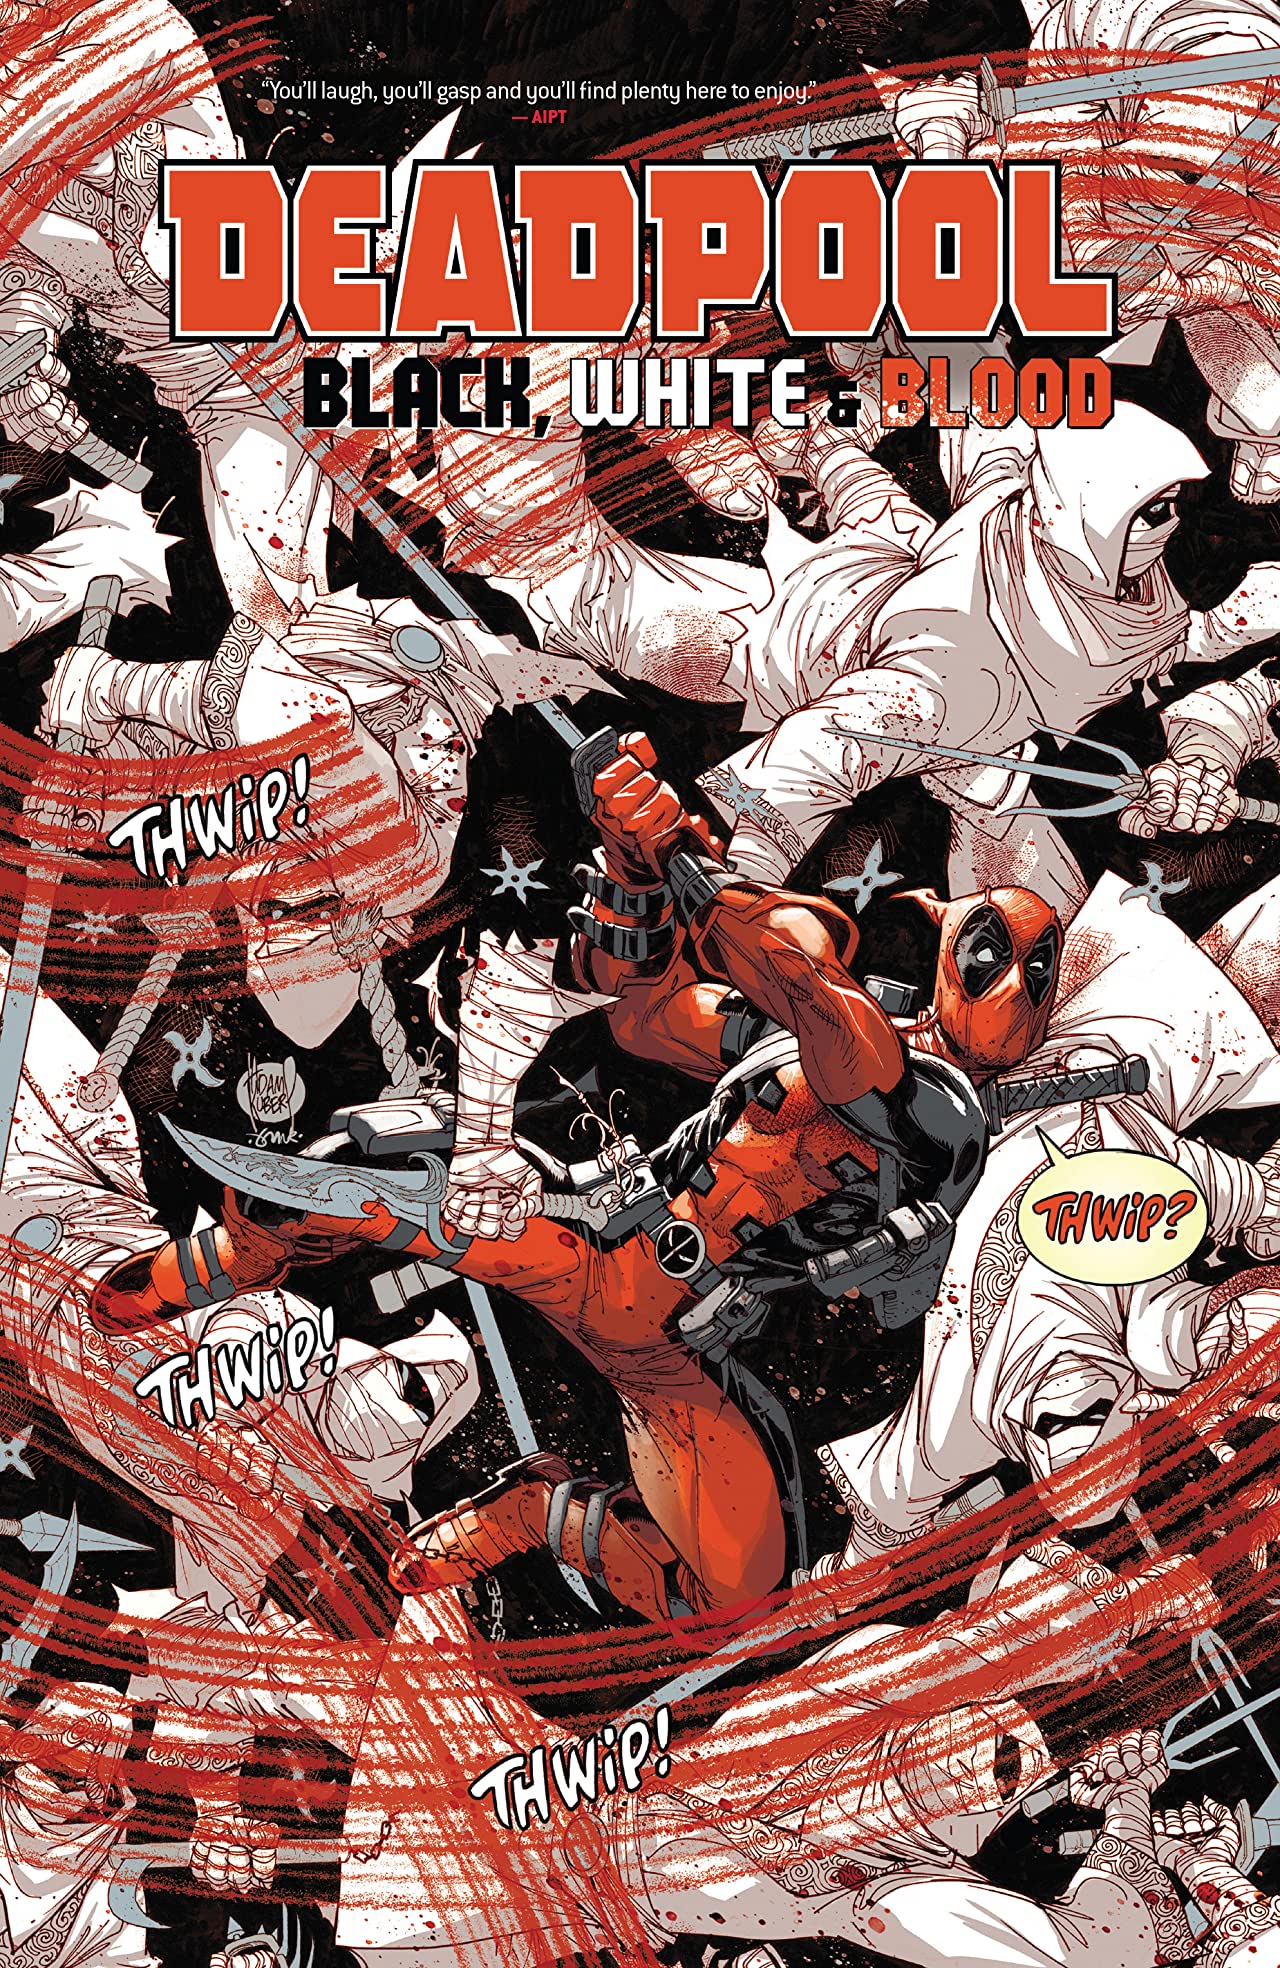 Deadpool: Black, White & Blood Marvel Comic Volume 1